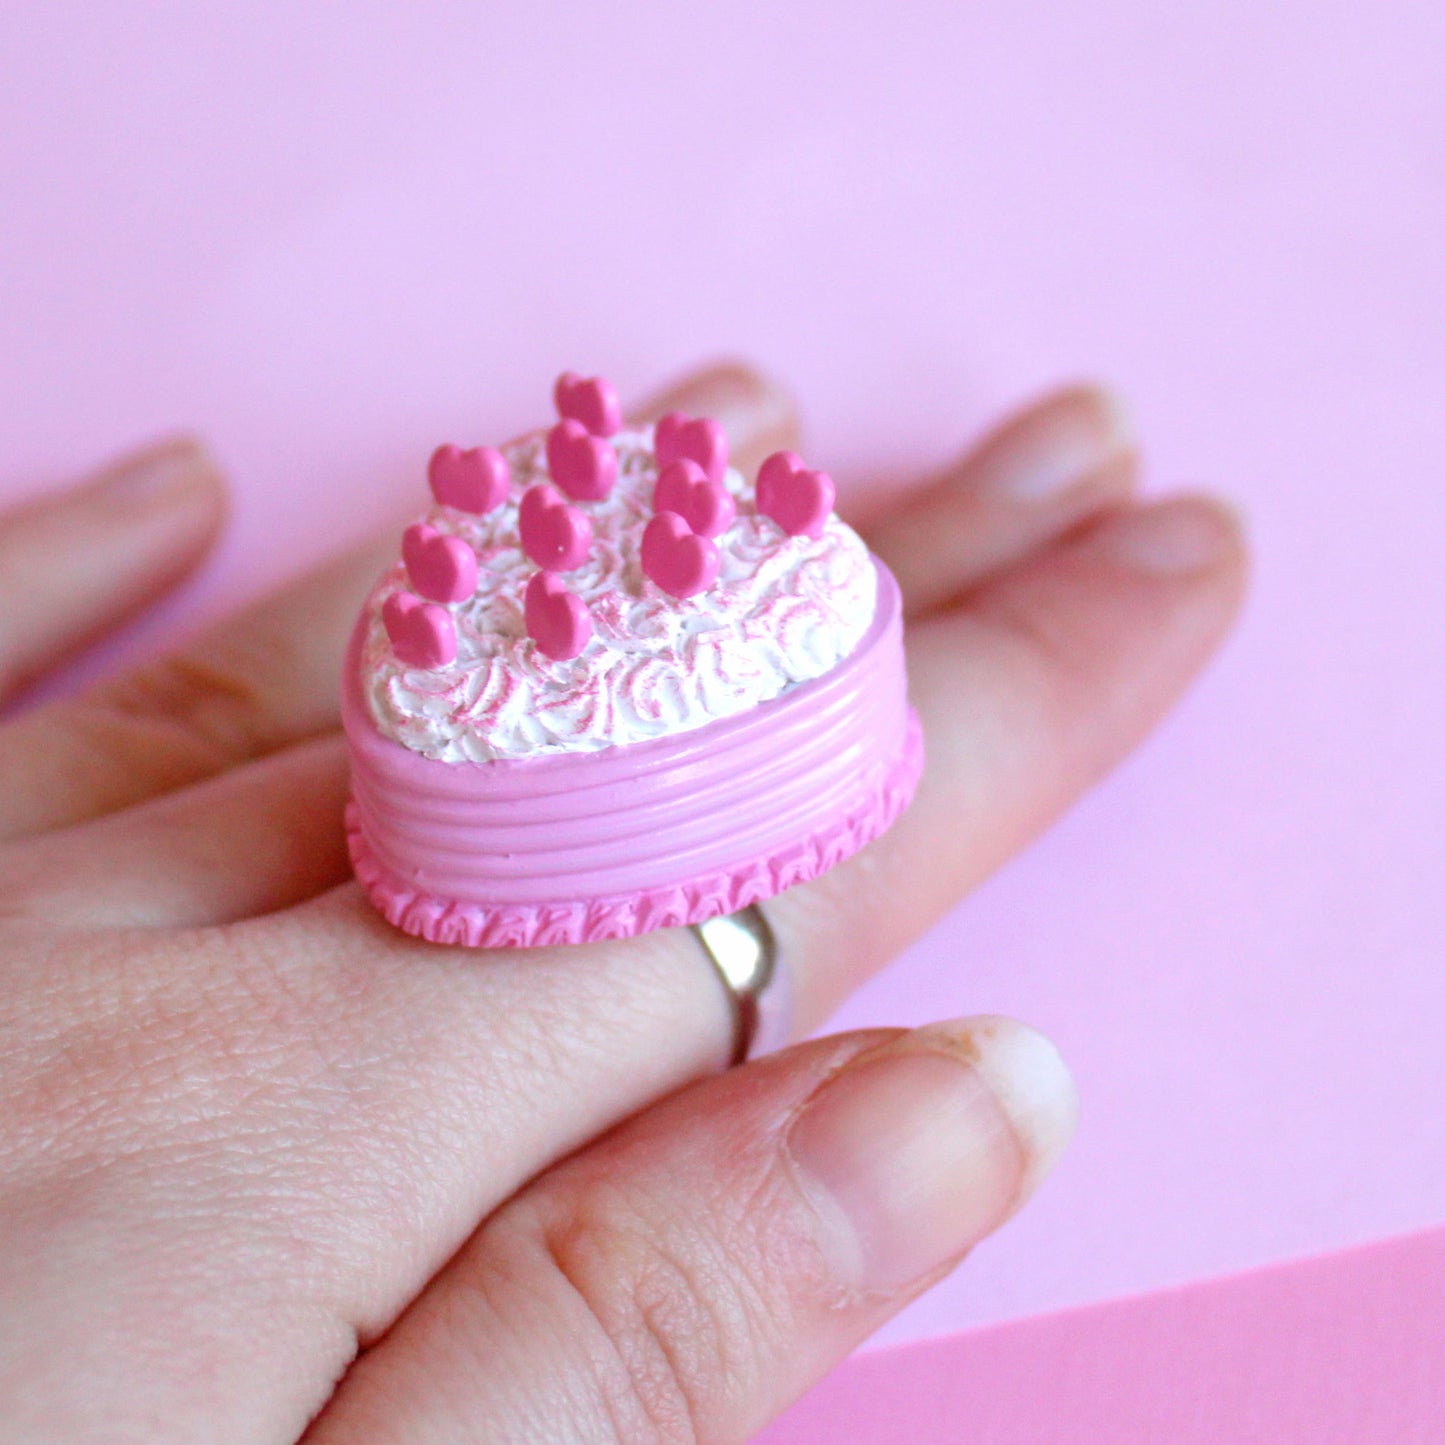 Pink Heart Cake Ring